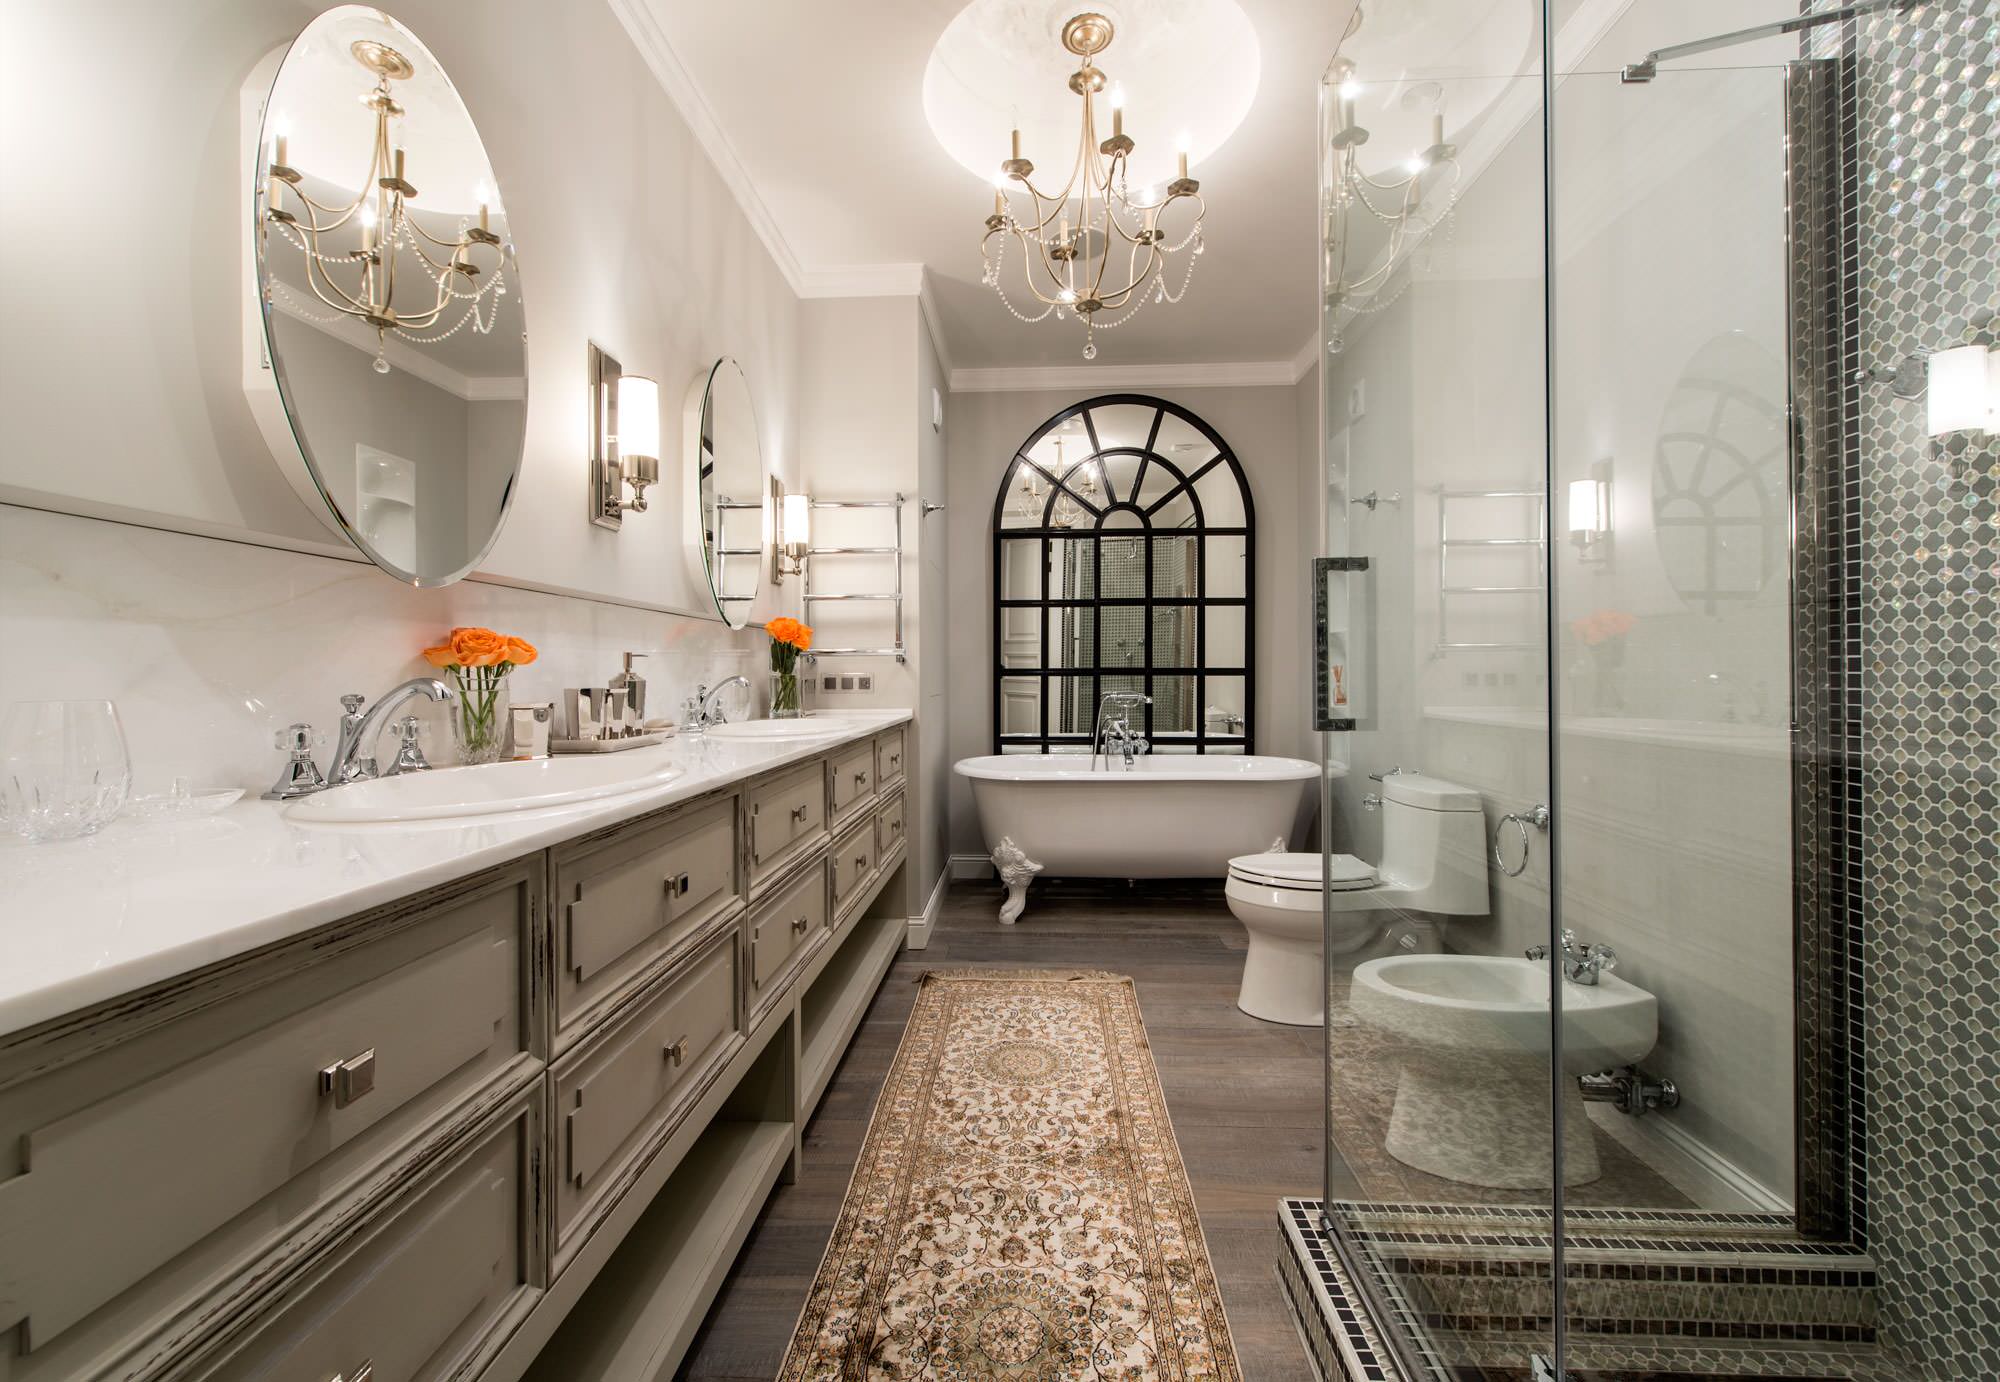 Необычный дизайн интерьера ванной комнаты ⋆ Planeta Design